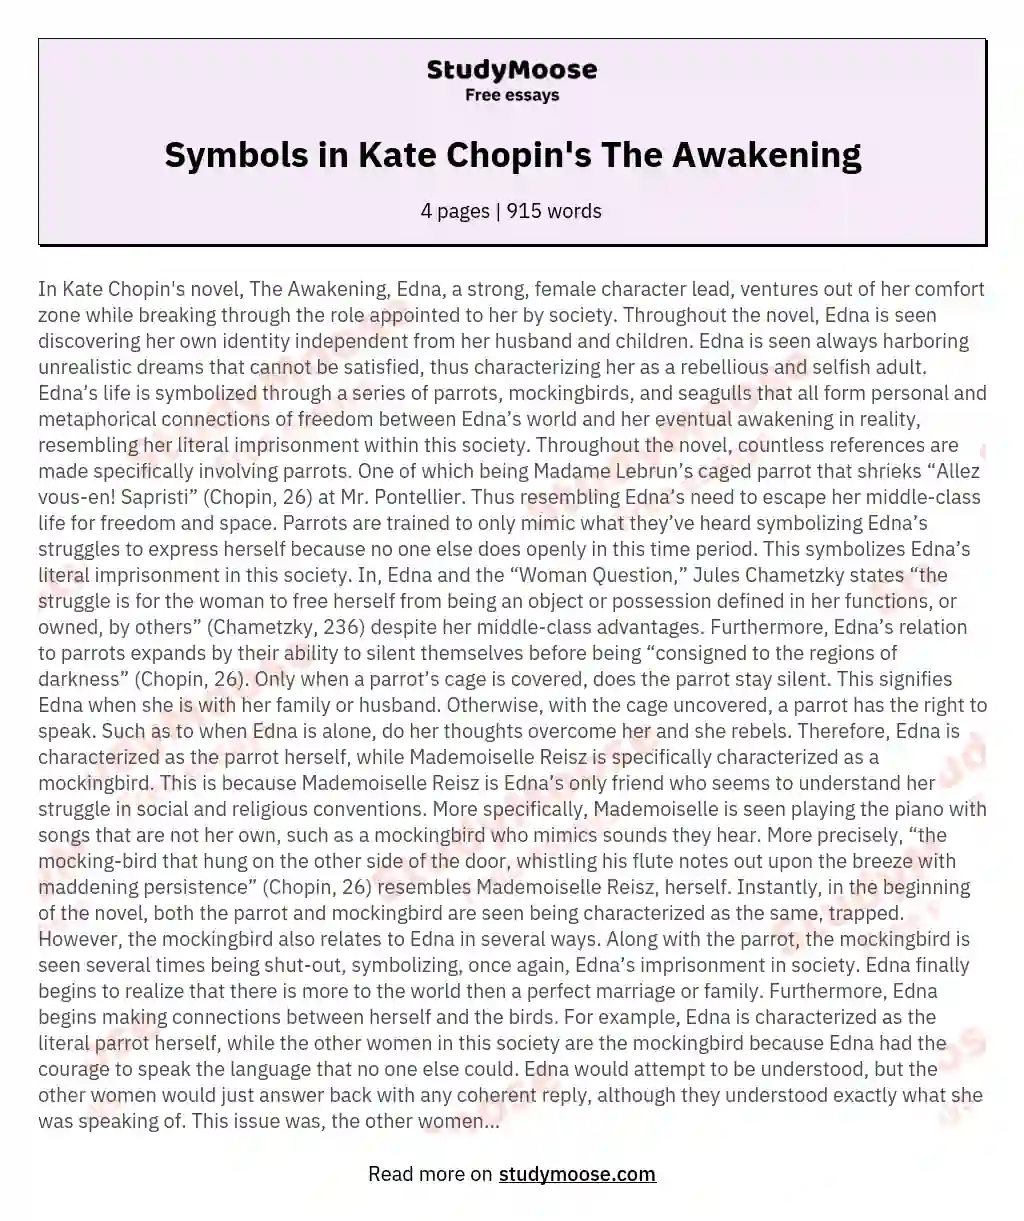 Symbols in Kate Chopin's The Awakening